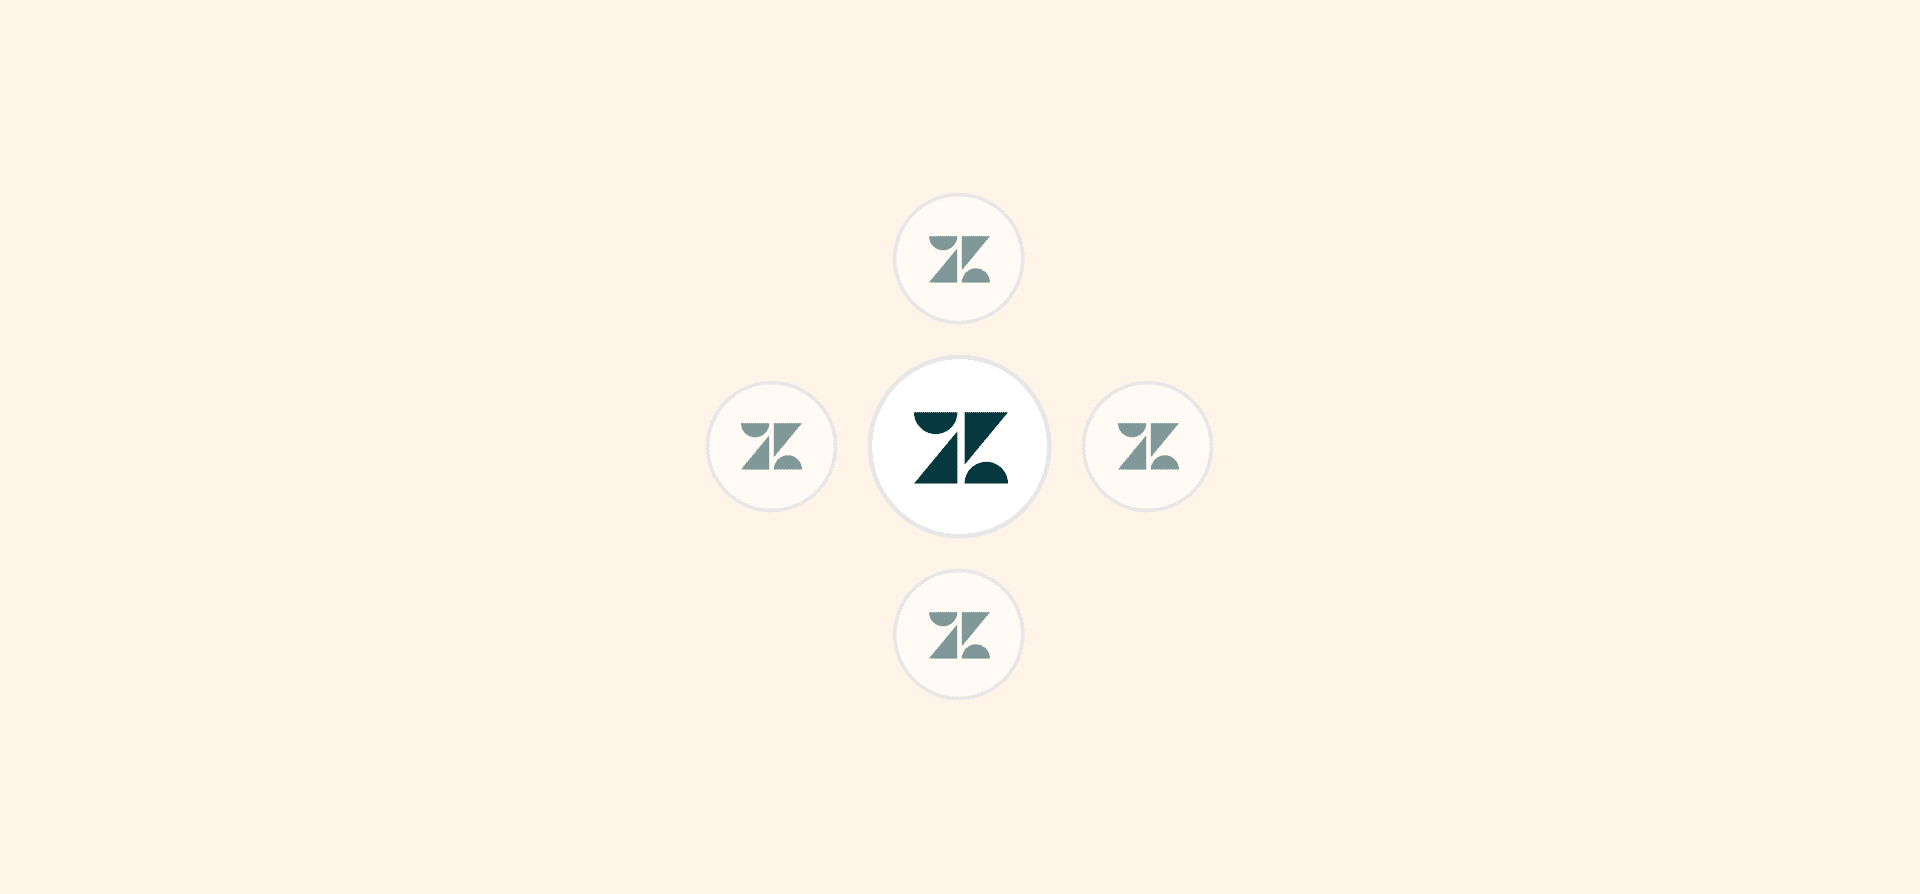 Logos for Zendesk, representing the Zendesk alternatives blog post